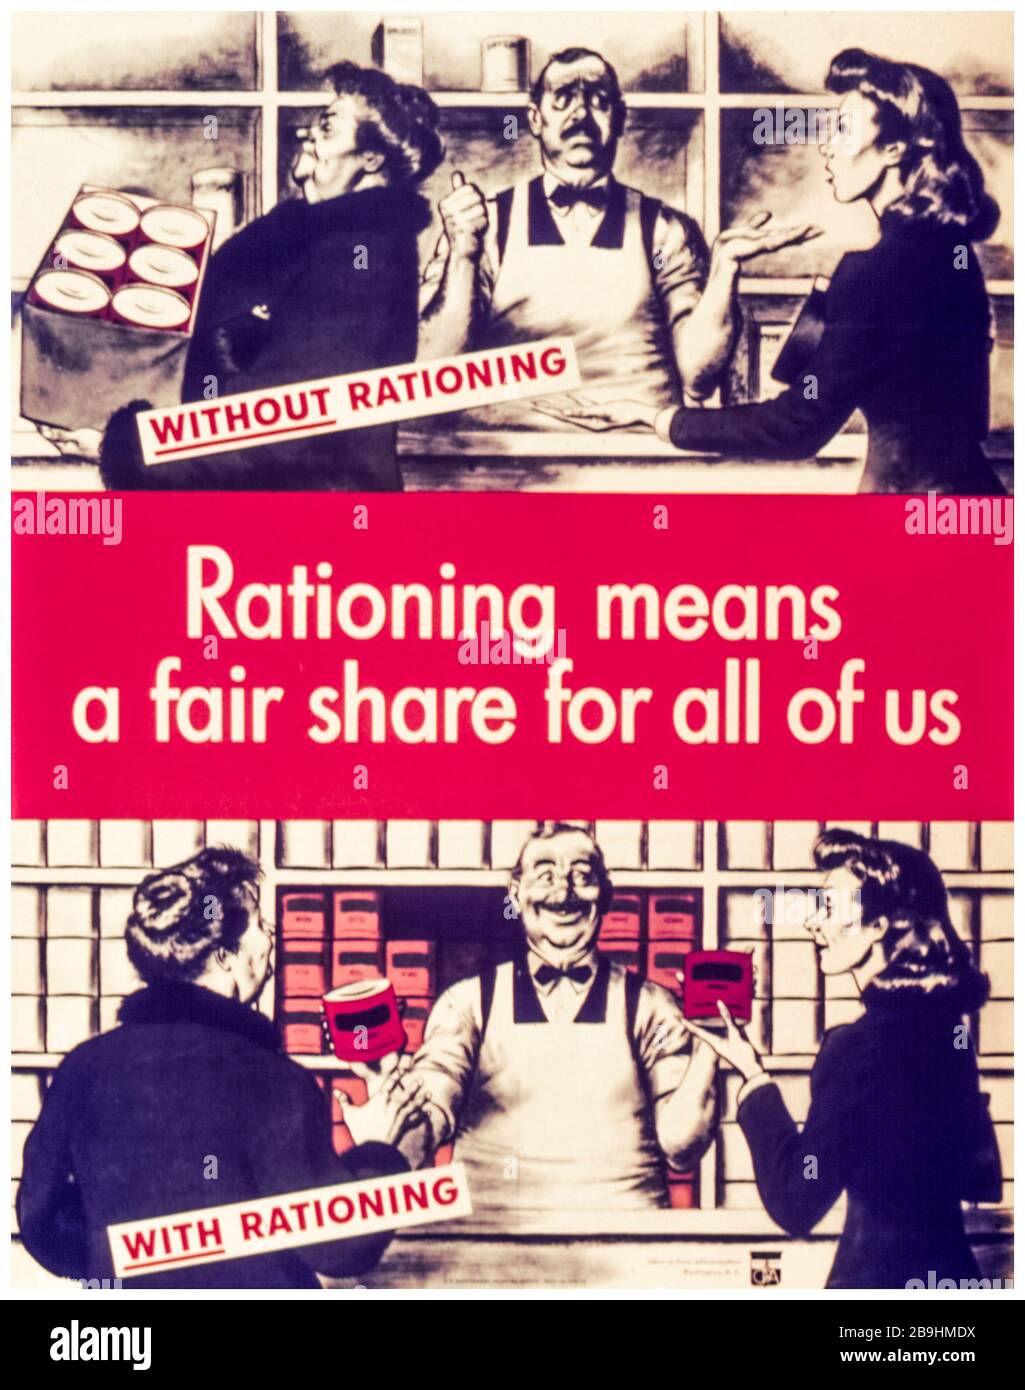 USA WW2, Plakat für Lebensmittelrationierung, Rationierung bedeutet für uns alle einen fairen Anteil, 1941-1945 Stockfoto